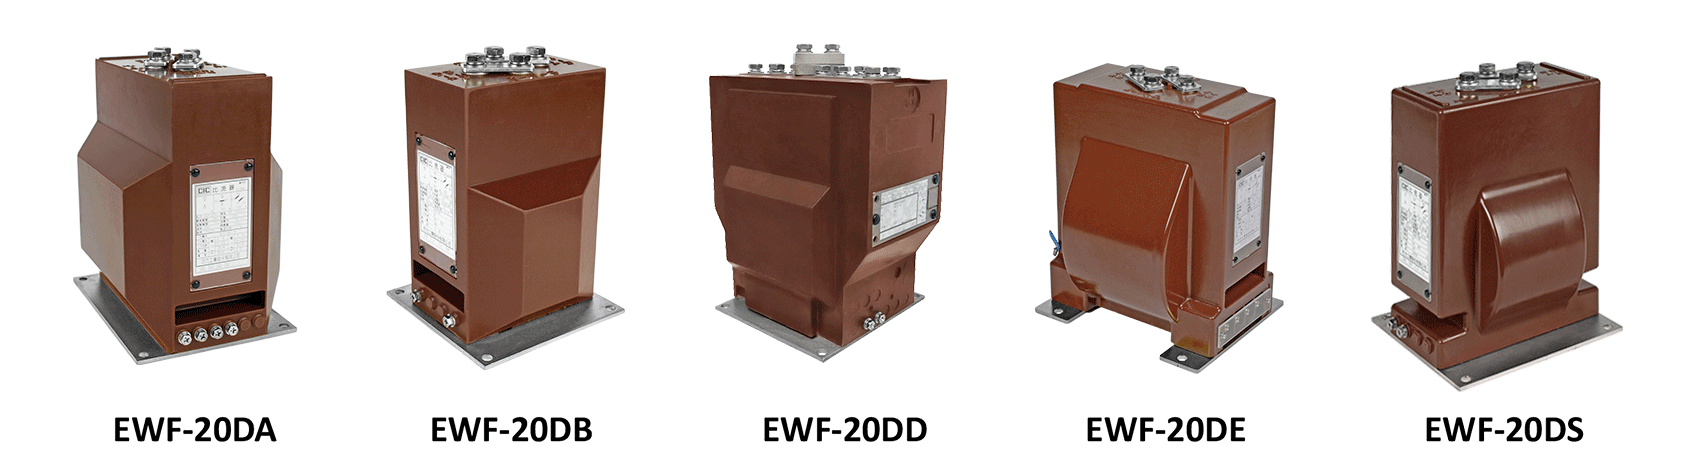 Transformadores de corrente de resina epóxi de 20kV para aplicação interna